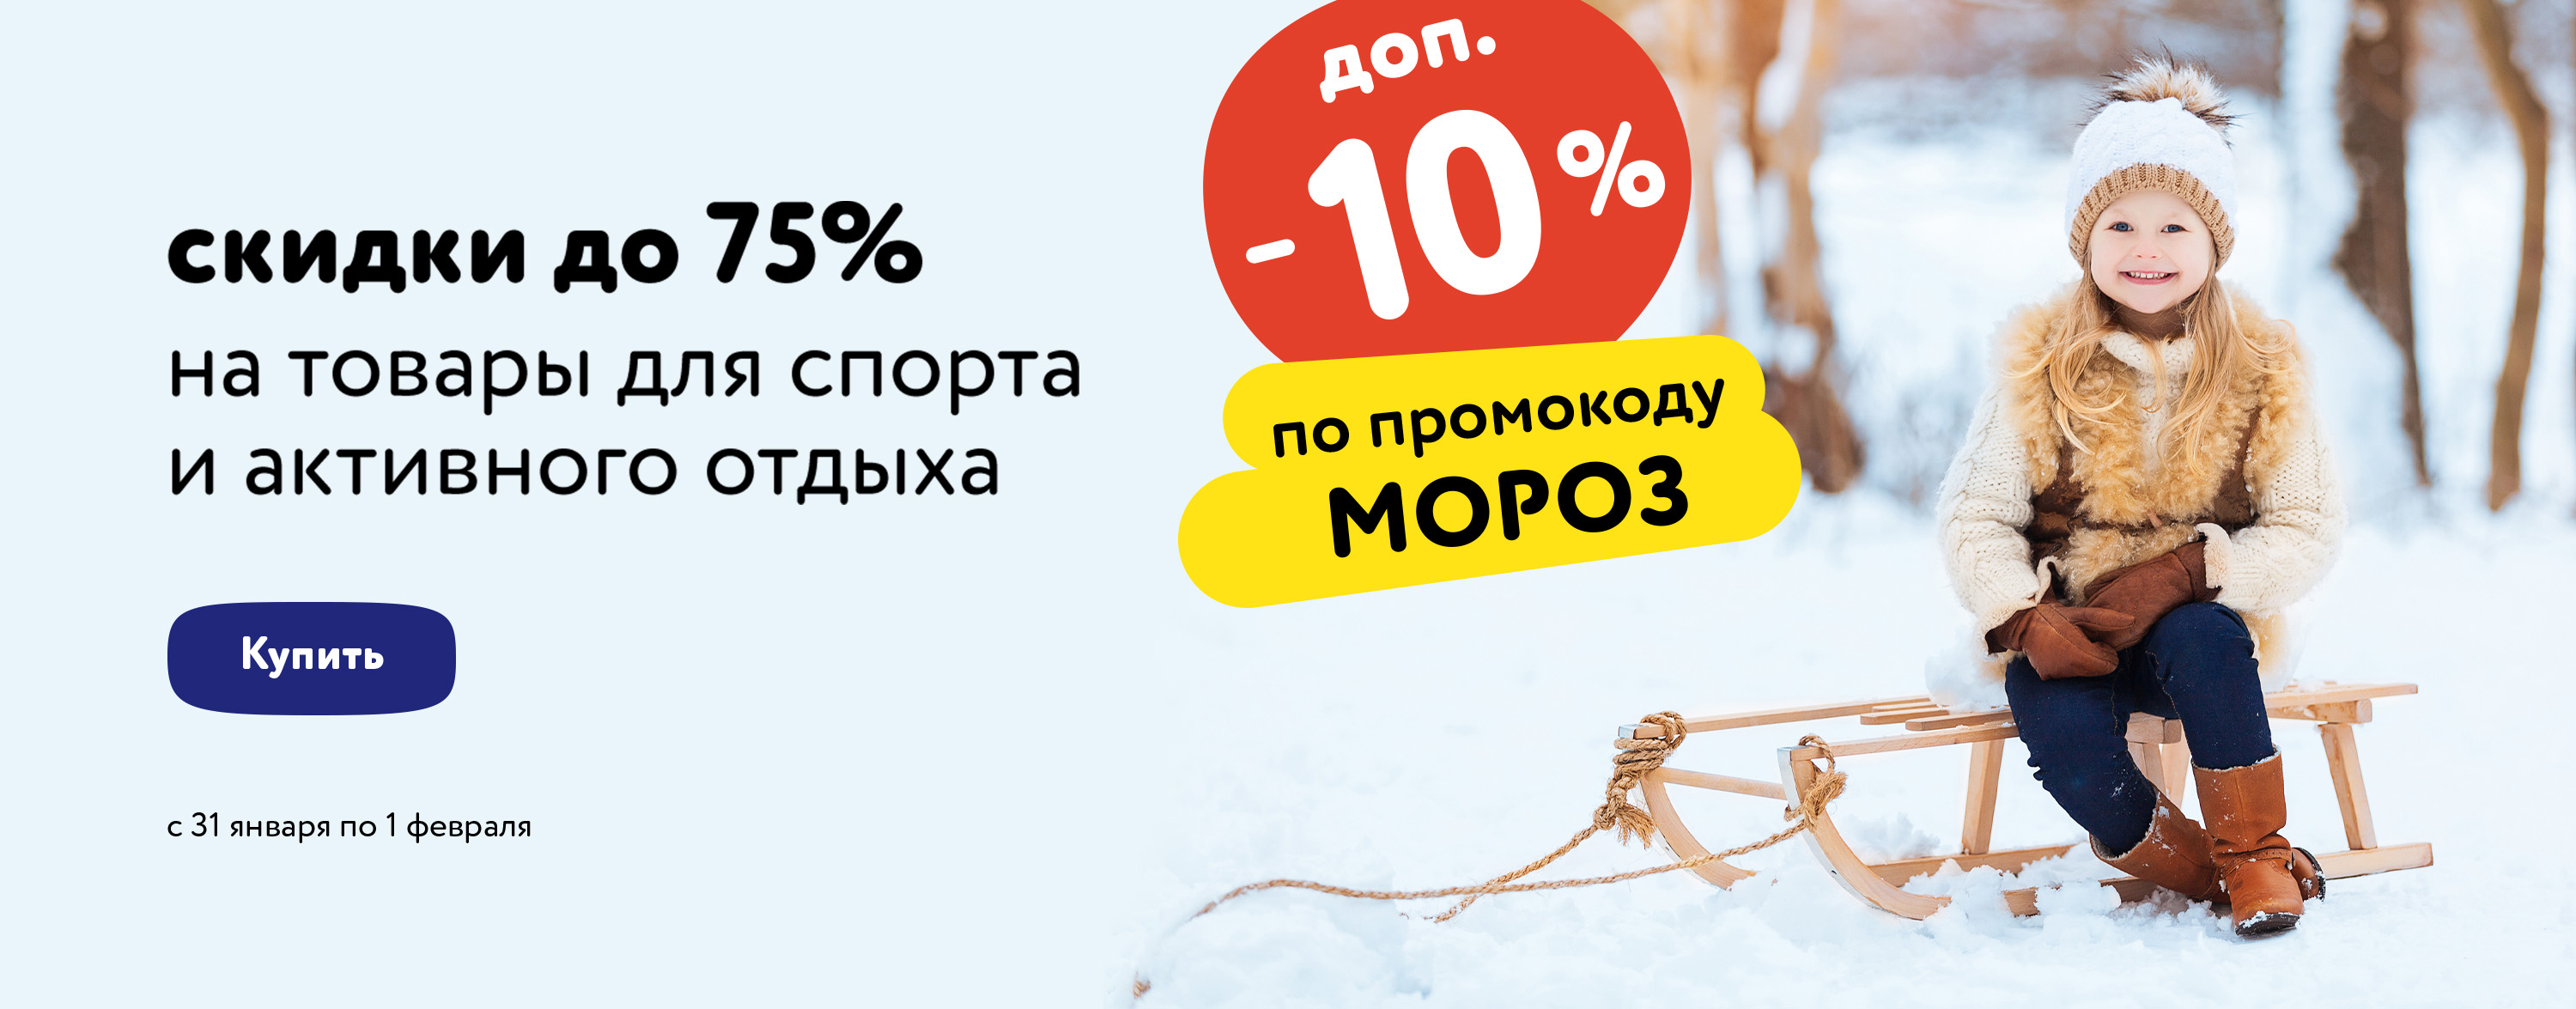 Доп. скидка 10% по промокоду на спортивные товары (МОРОЗ) (статика+категории)